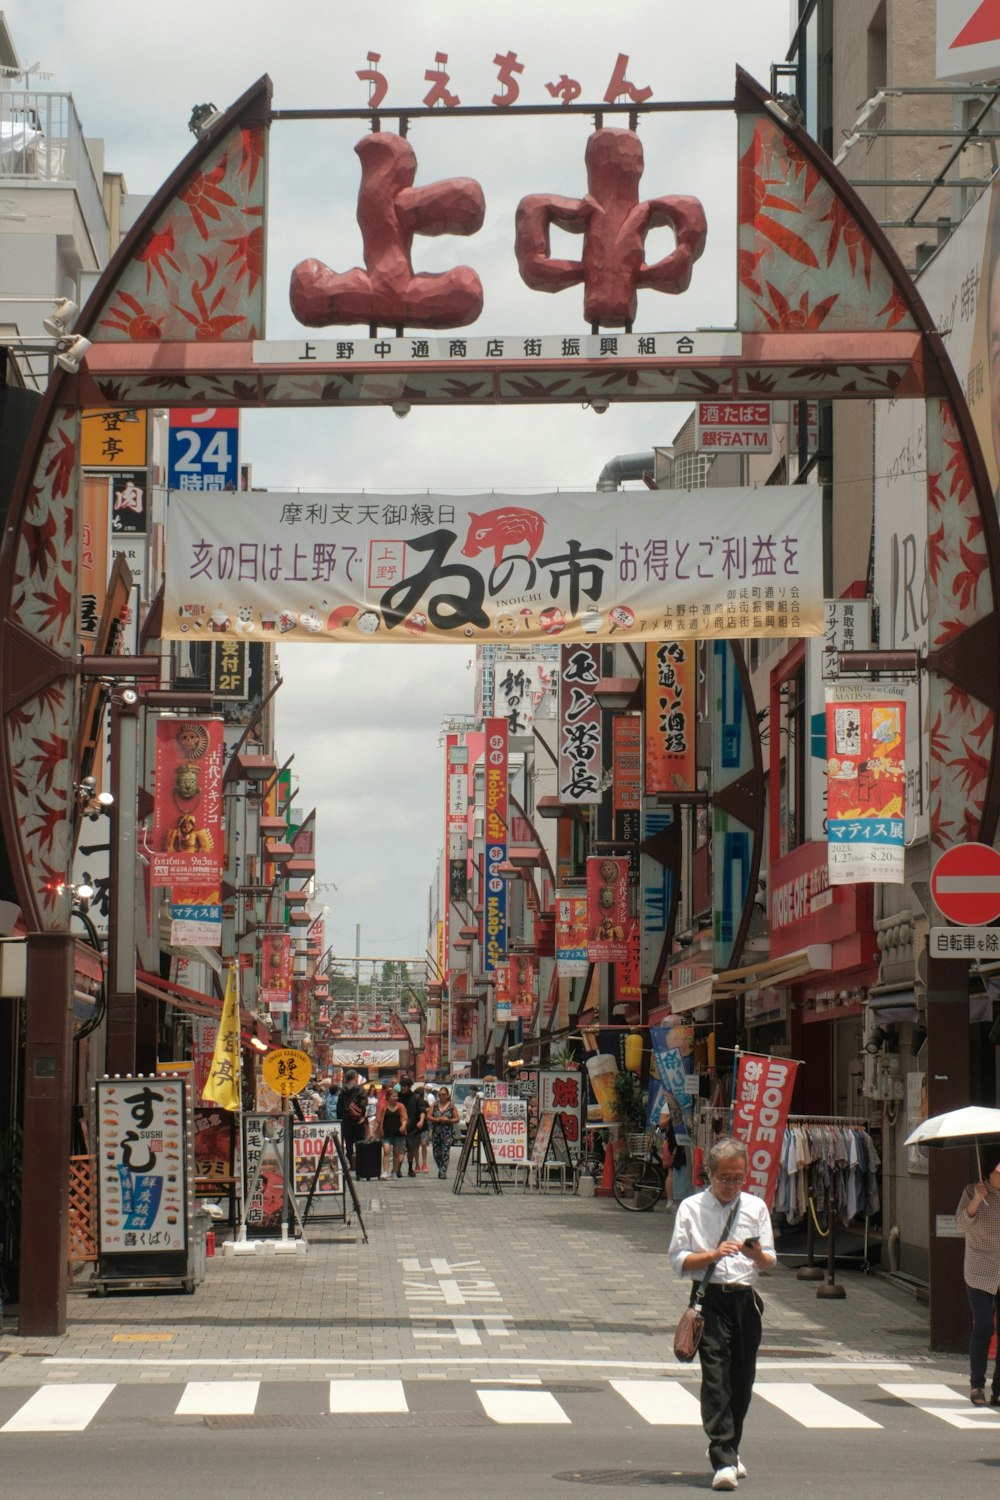 a man walking down a street under a sign